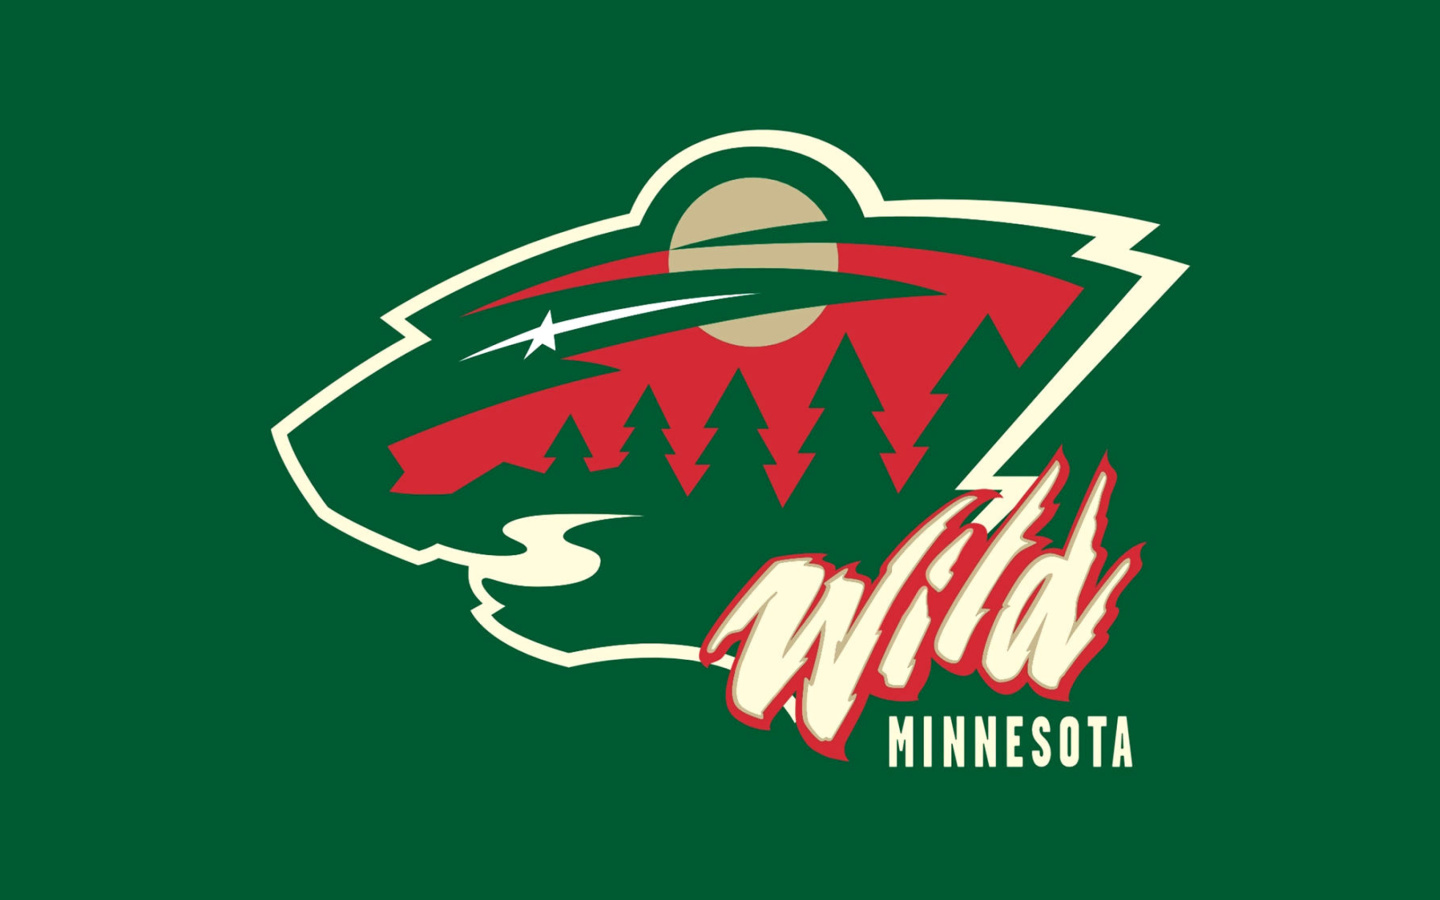 Minnesota Wild wallpaper 1440x900